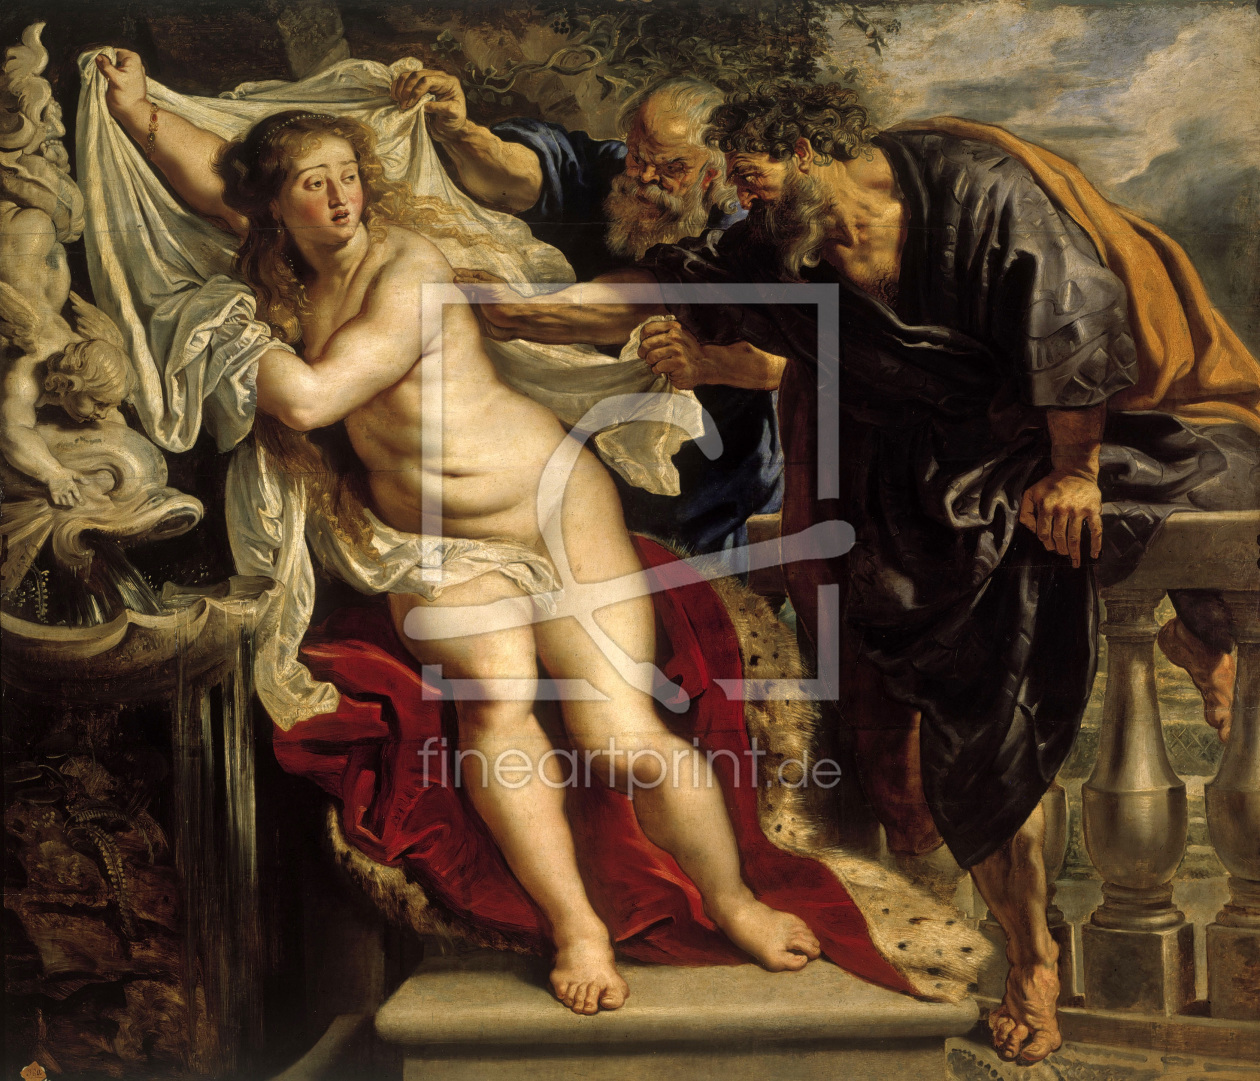 Bild-Nr.: 30005162 Susanna / Rubens & Snyders / 1610/11 erstellt von Rubens, Peter Paul